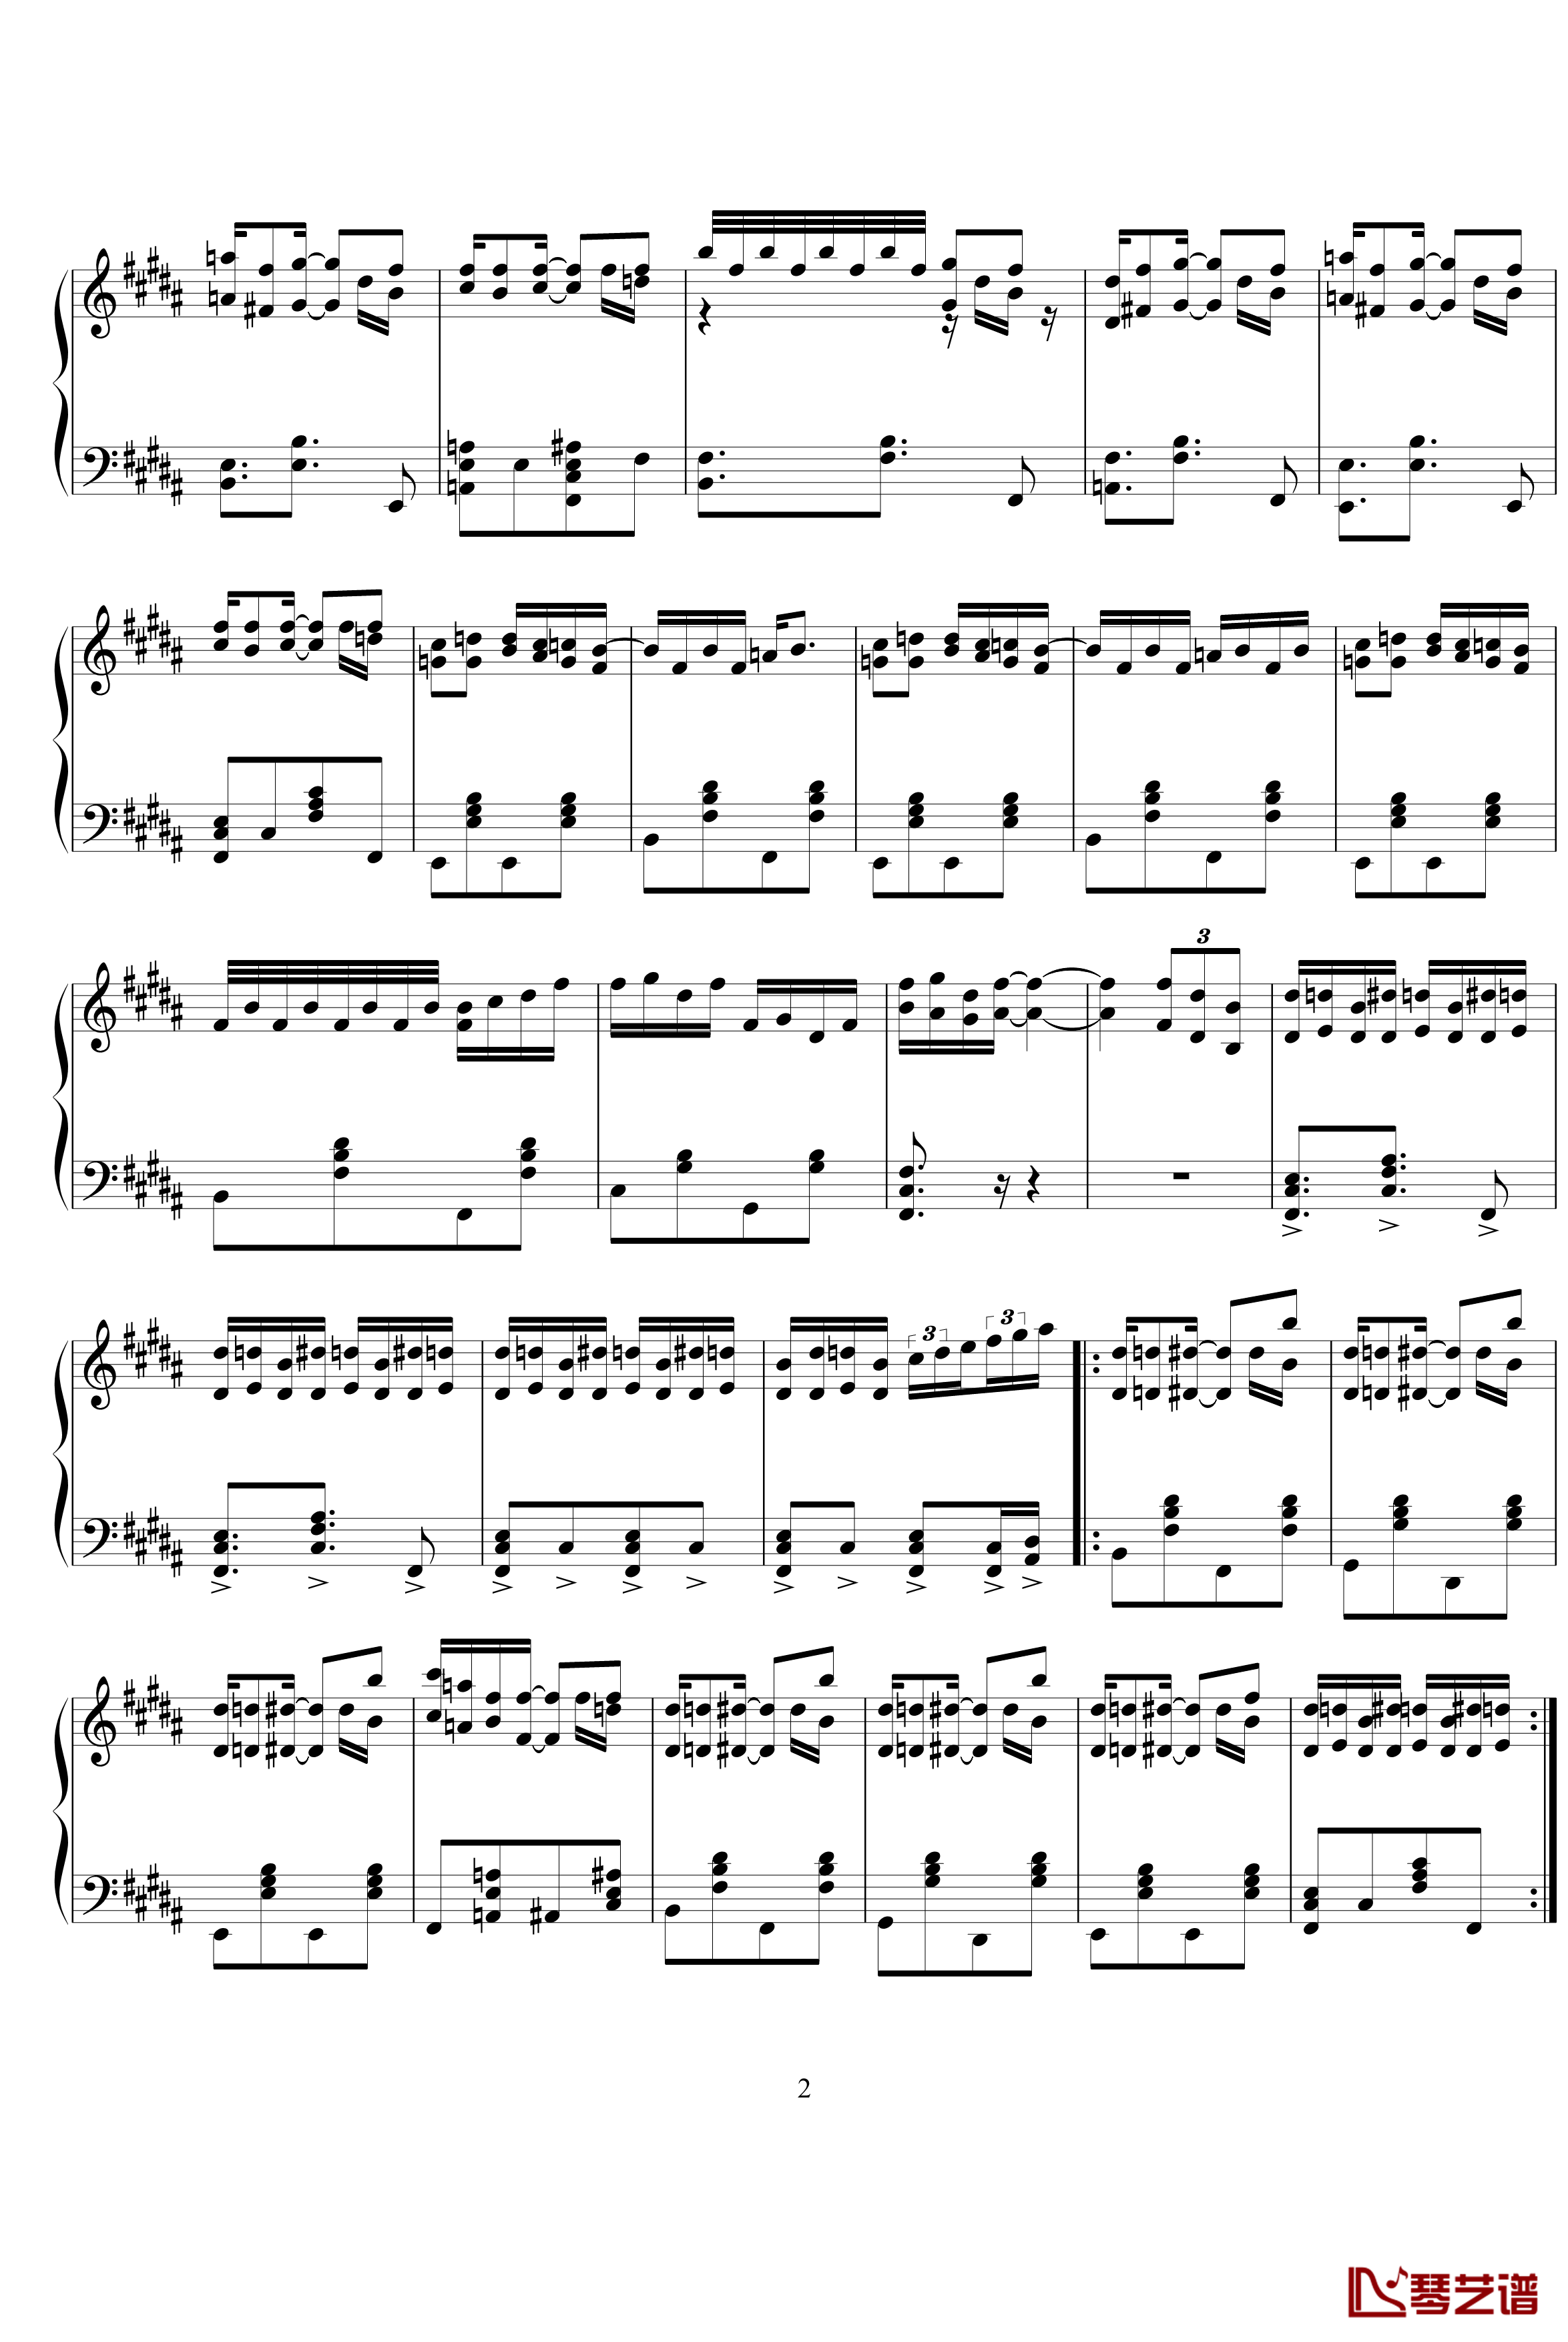 即兴爵士曲钢琴谱-leeyang5212